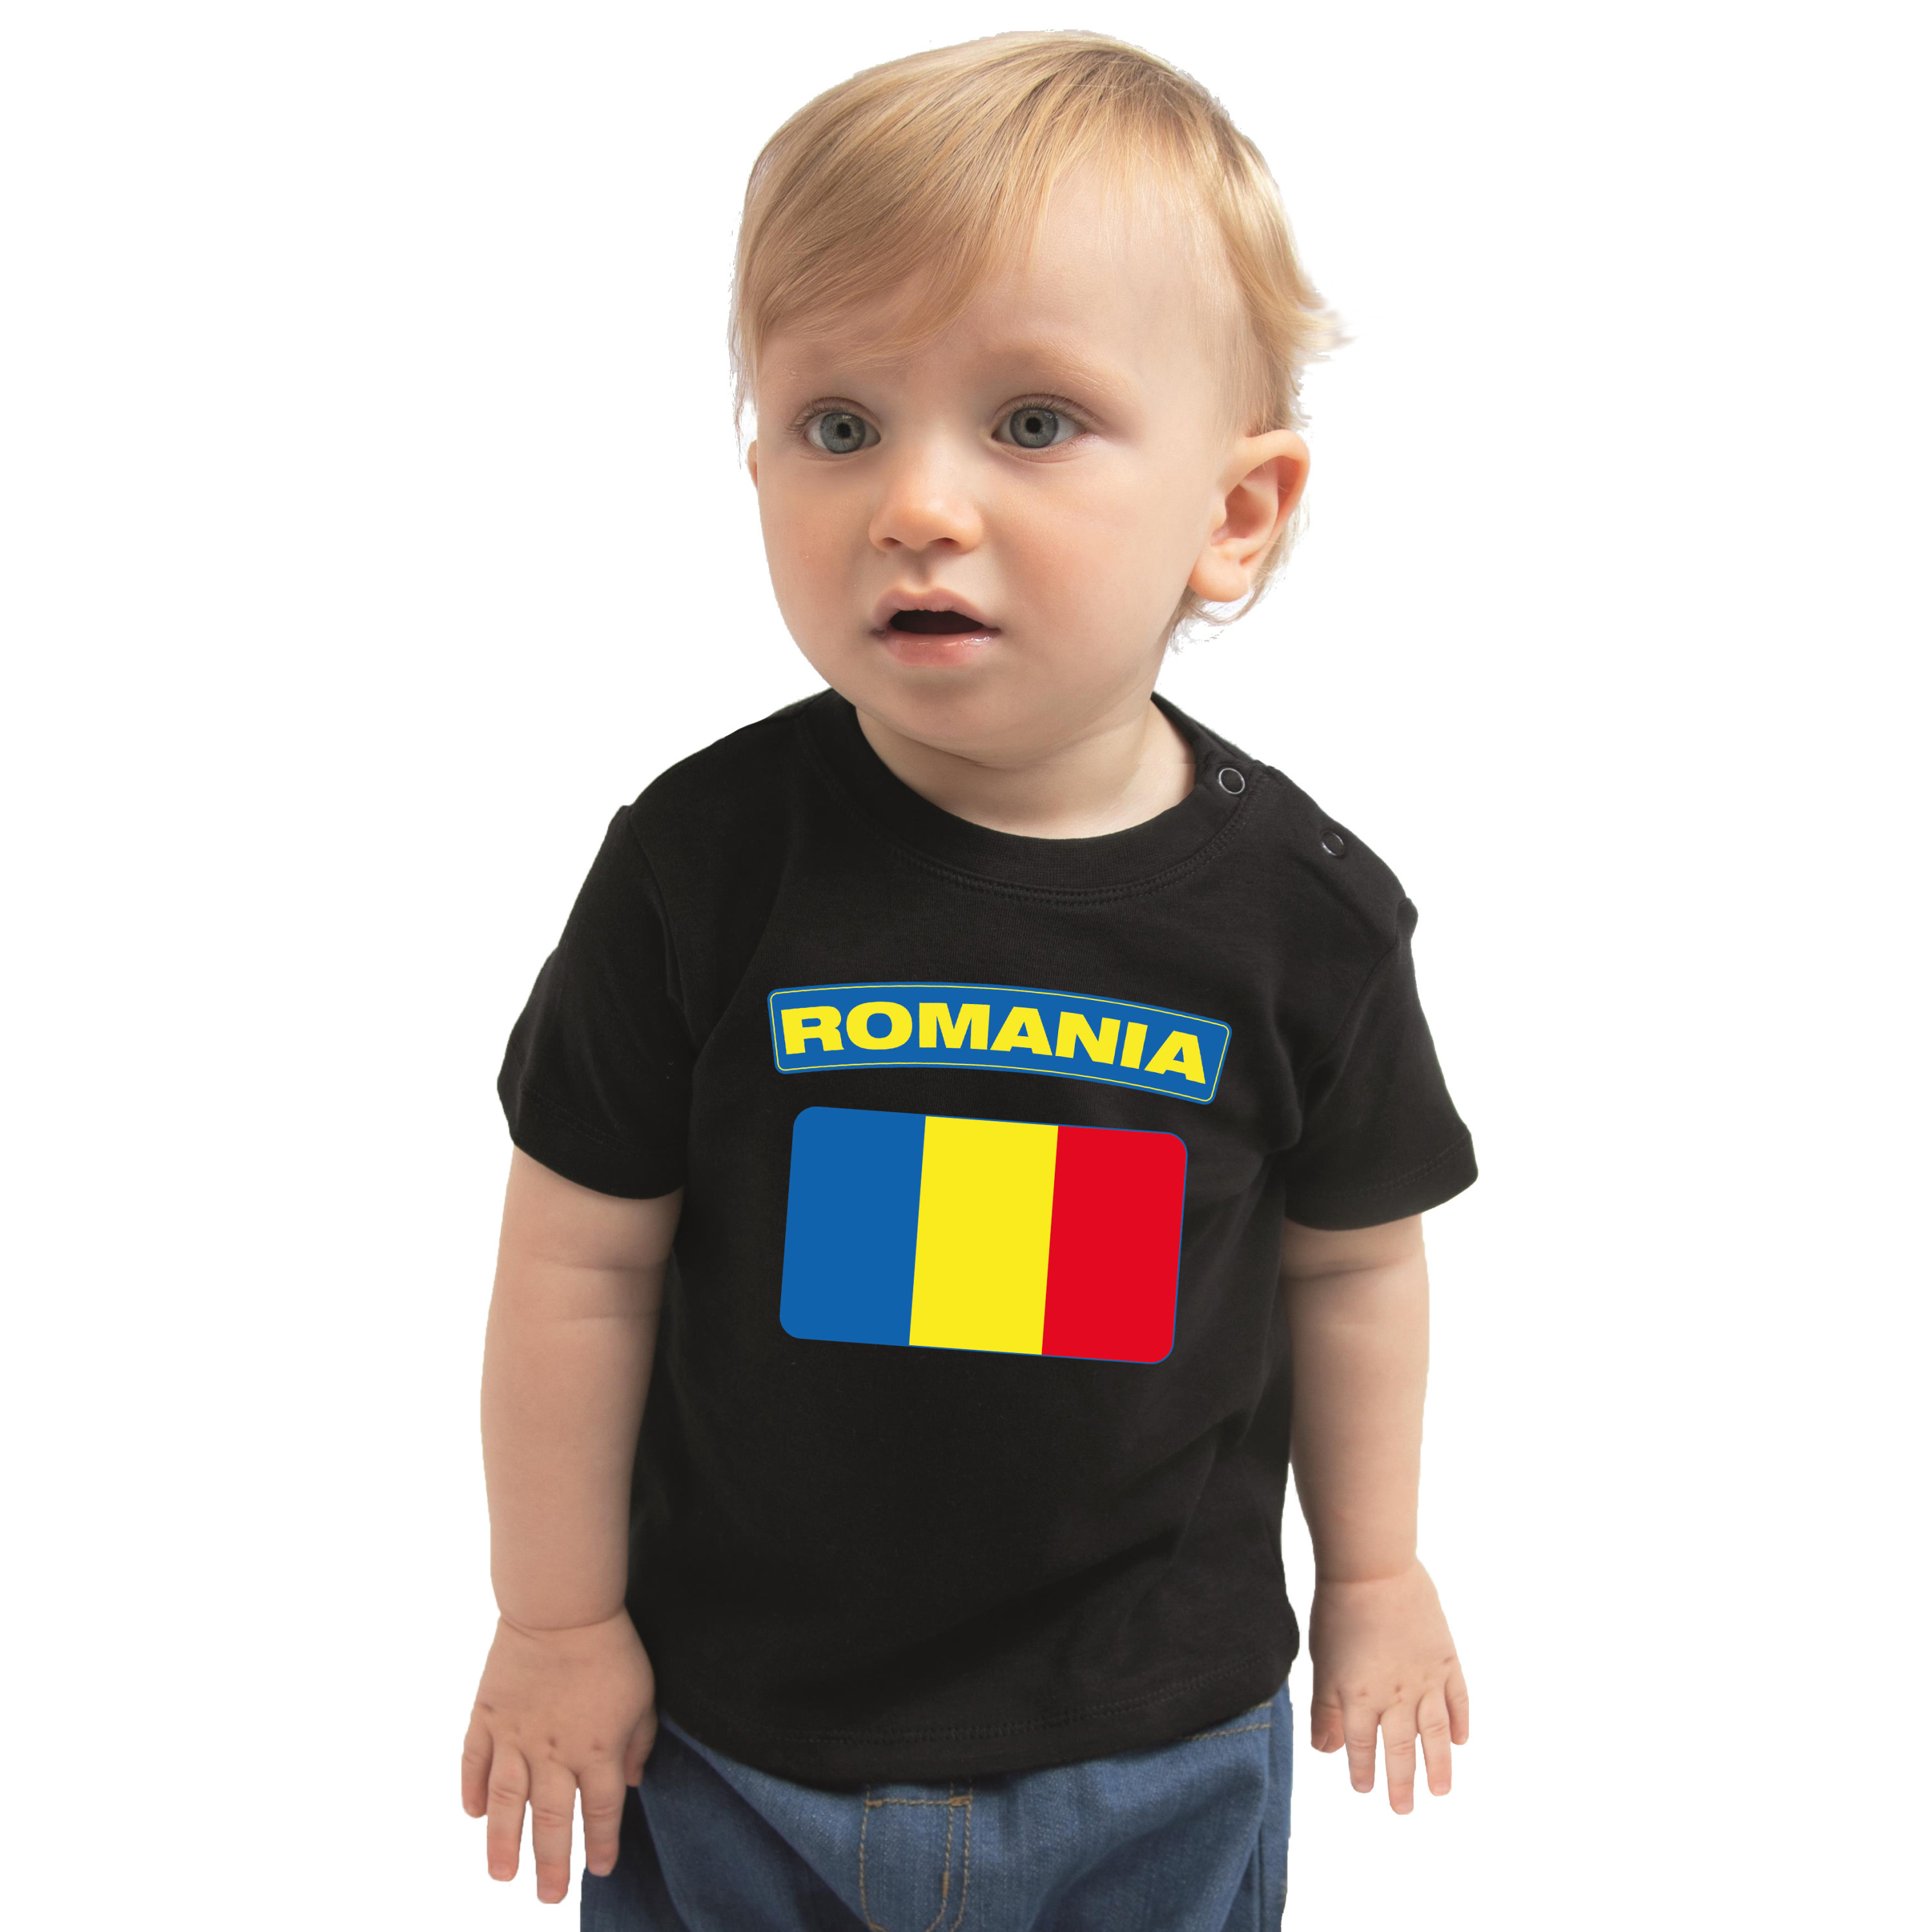 Romania t-shirt met vlag Roemenie zwart voor babys